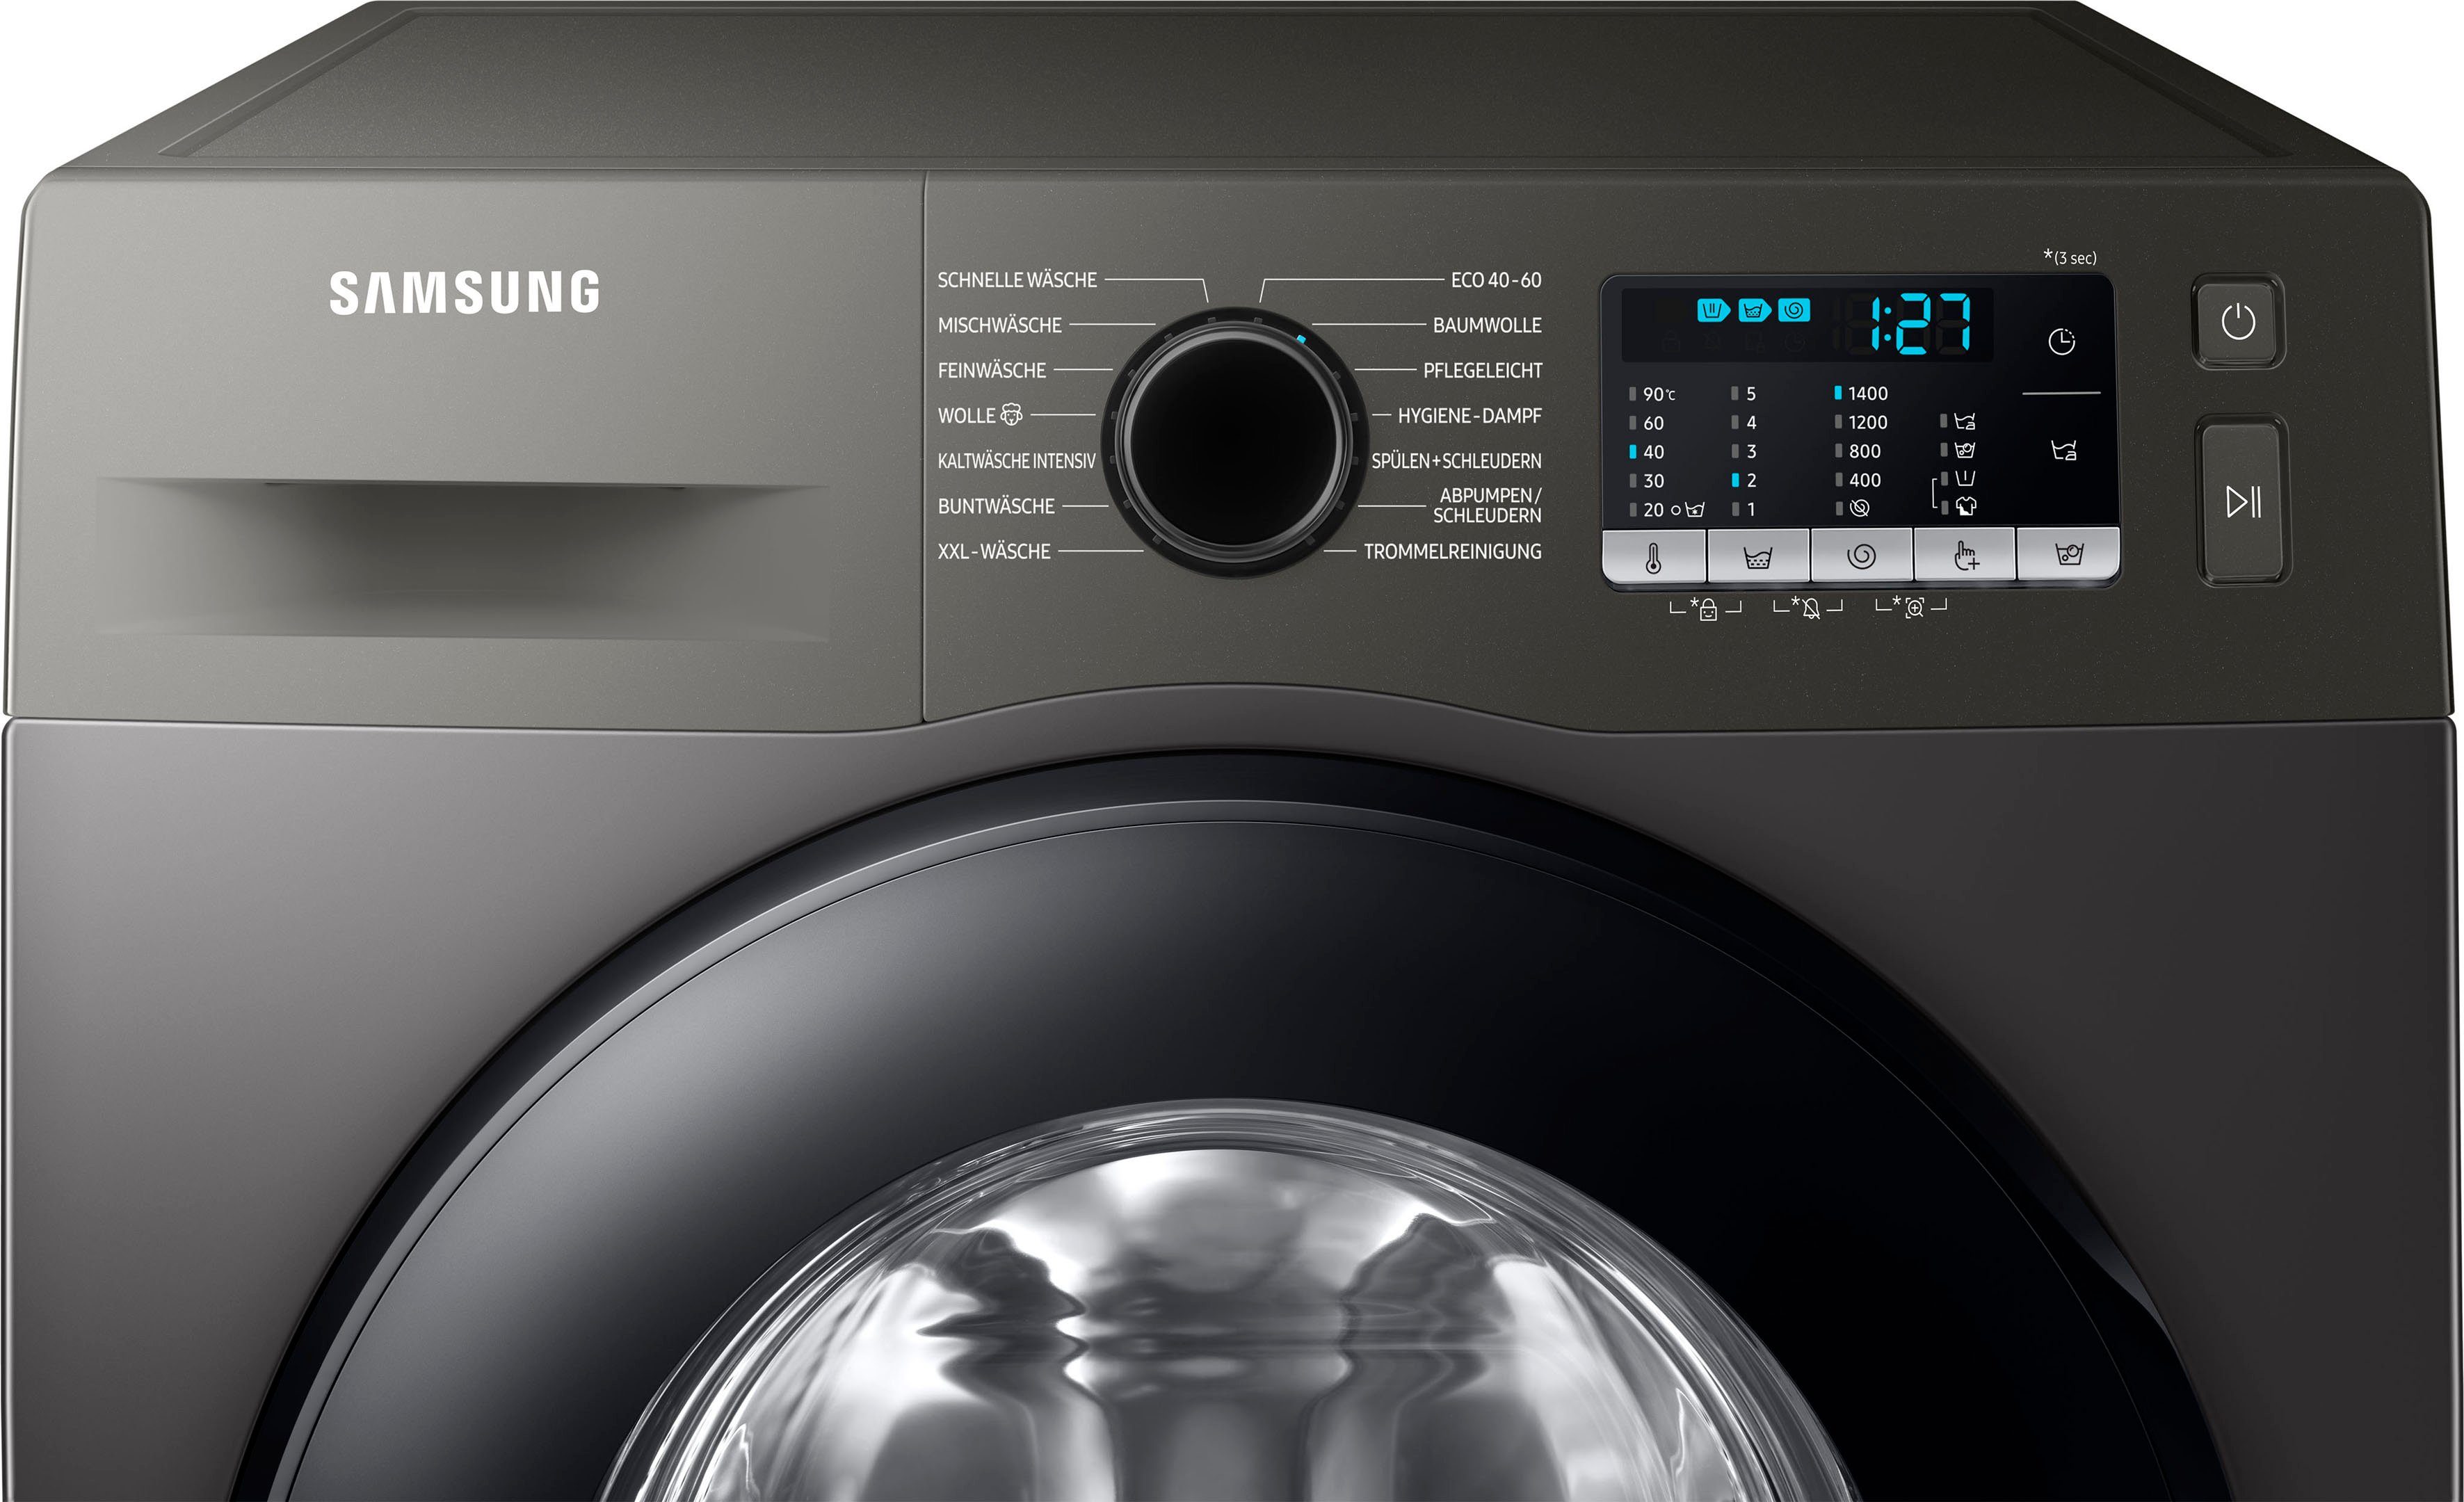 Samsung Waschmaschine WW5000T U/min, 7 WW70TA049AX, 1400 FleckenIntensiv-Funktion kg, INOX